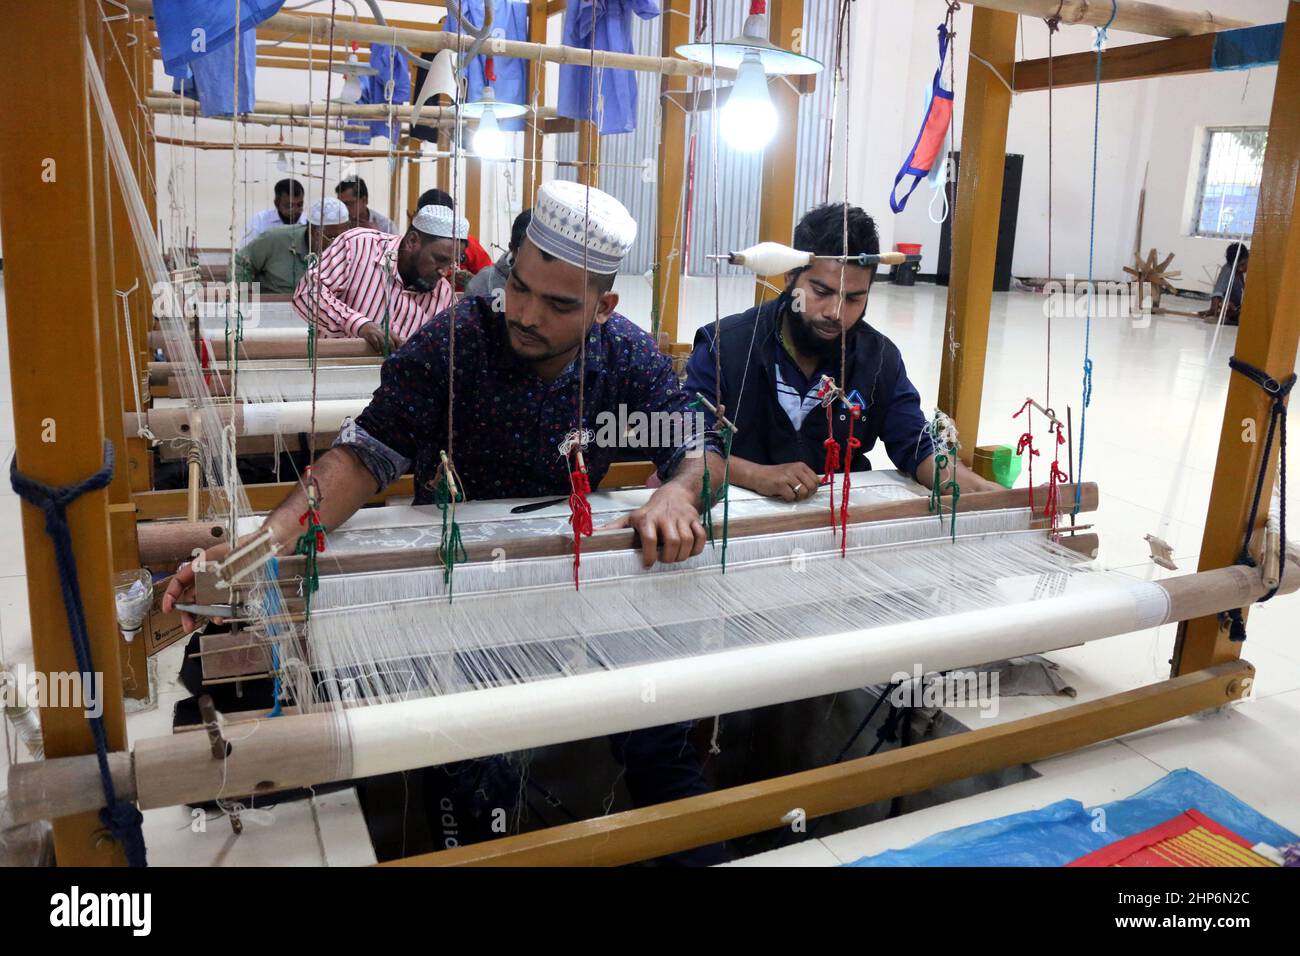 Am 18,2022. Februar machen Arbeiter in Rupganj am Stadtrand von Dhaka, Bangladesch, mit traditionellem tat Sari. Foto von Habibur Rahman/ABACAPRESS.COM Stockfoto